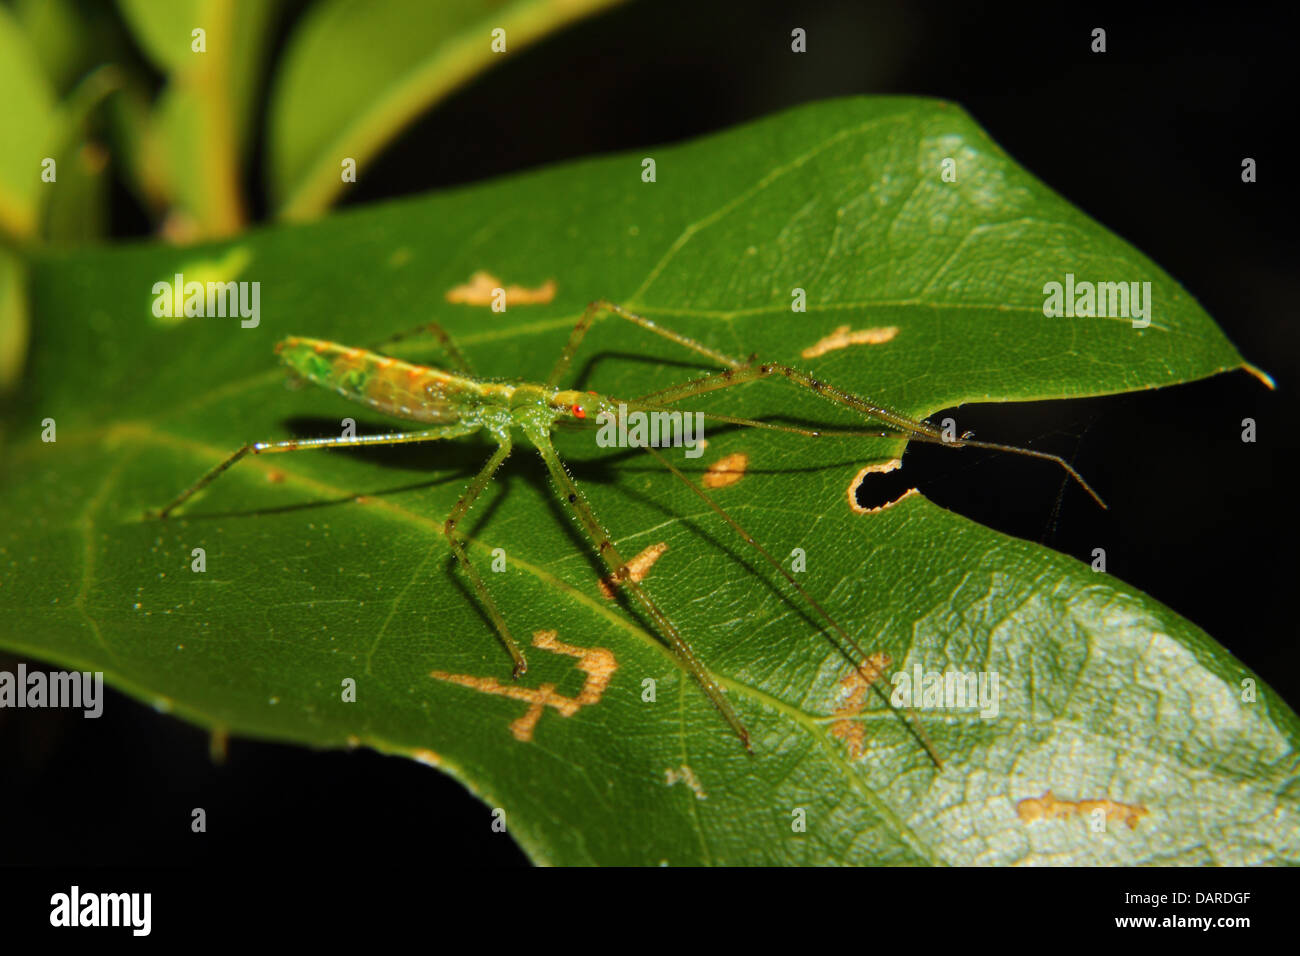 Eine grüne Assassin-Bug mit roten Augen und langen Beinen hockt auf einem grünen Blatt. Stockfoto